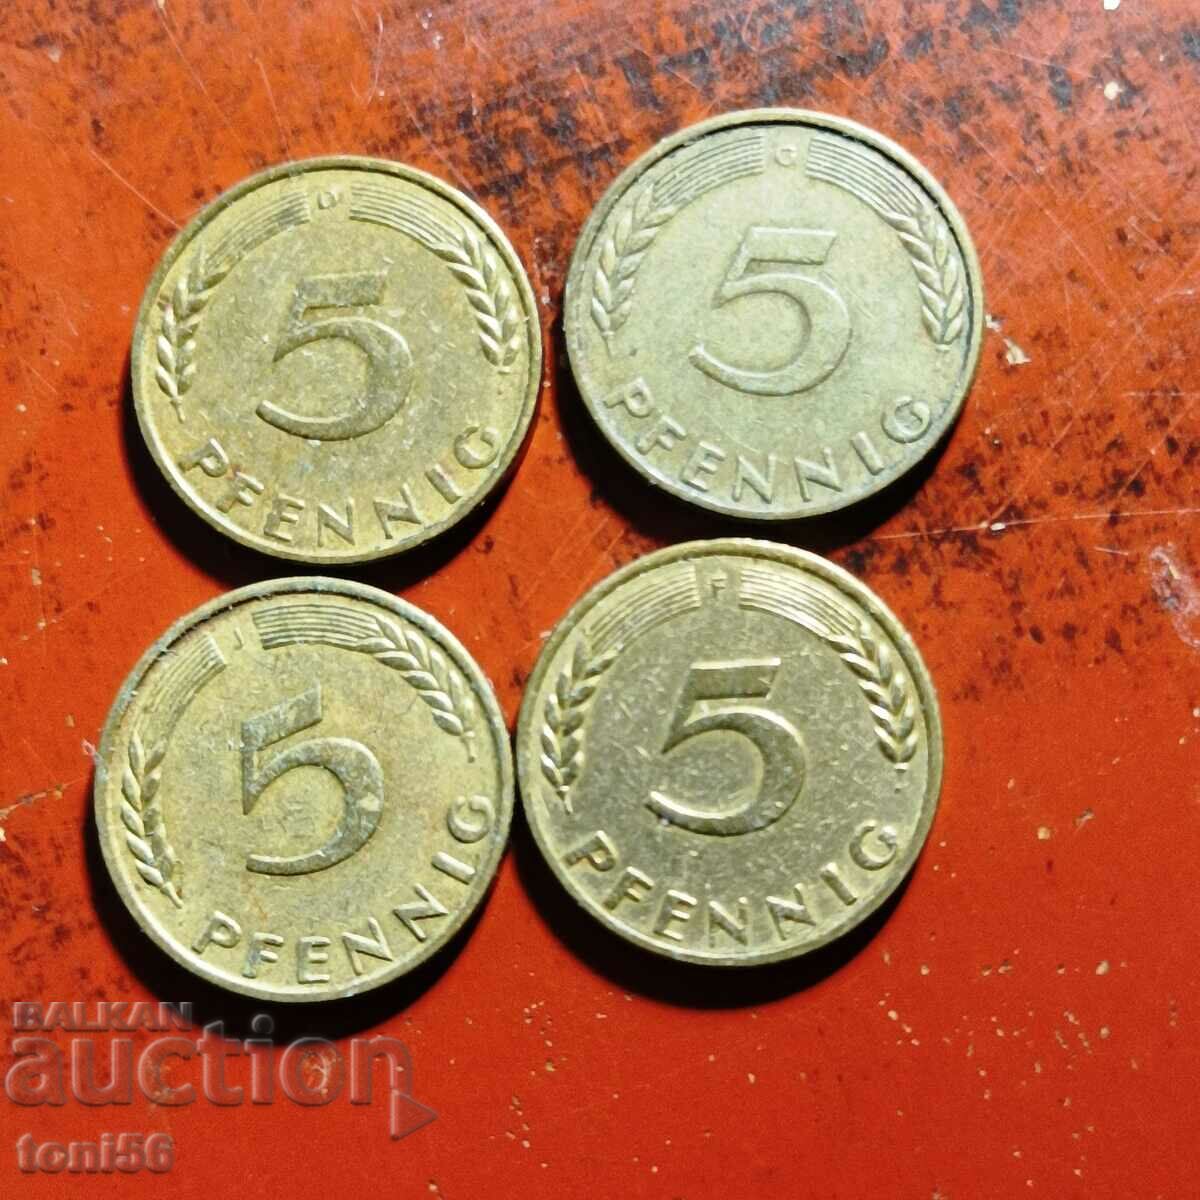 Γερμανία - FRG, 4x5 pfennig 1950 - όλα τα νομισματοκοπεία